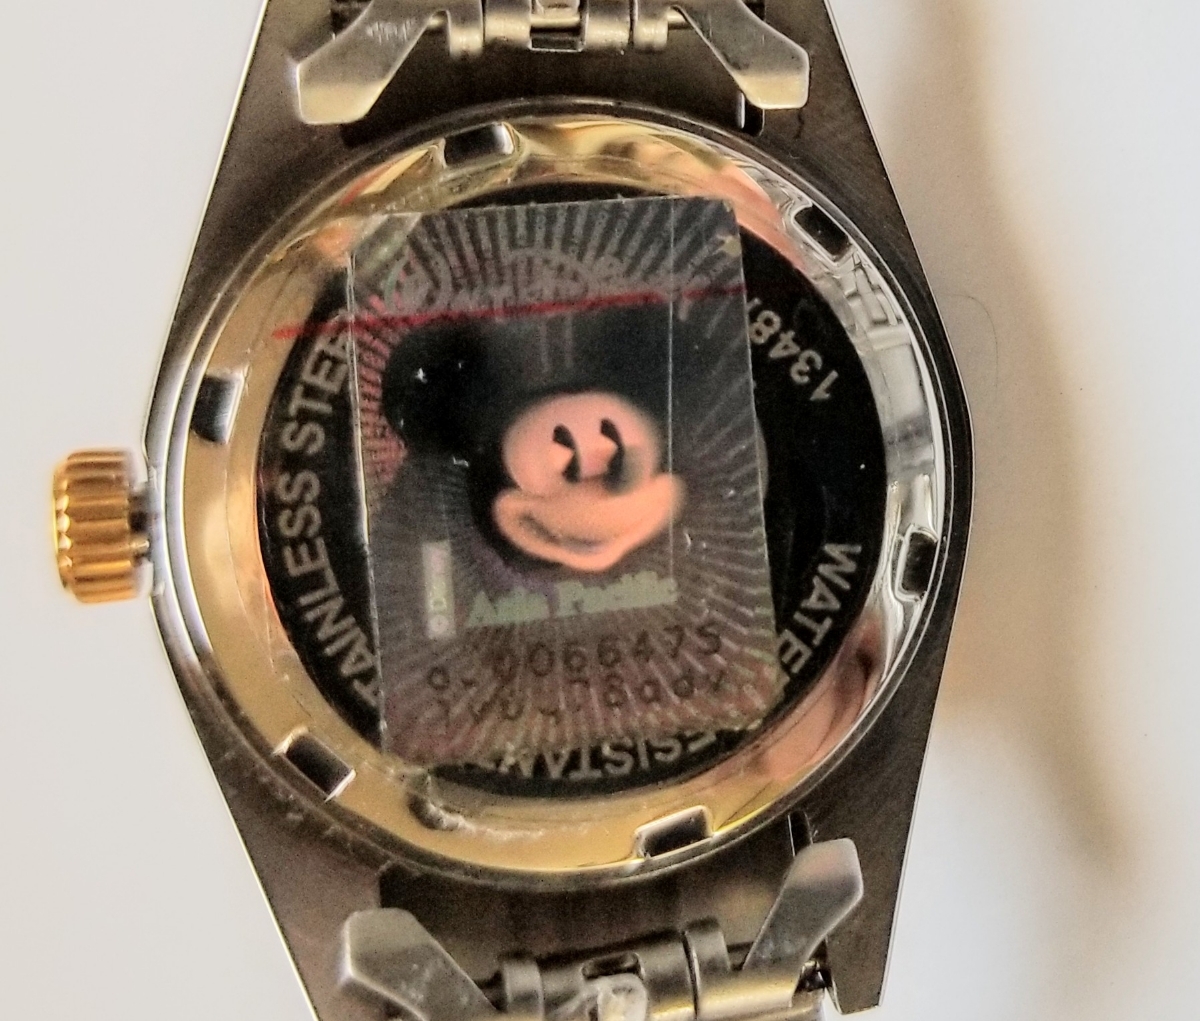  迪士尼80週年世界限量版米老鼠高級鑽石手錶女士勞力士型★具有豪華獎金 原文: DISNEY 生誕80周年　世界限定モデルのミッキーマウス　プレミアムダイヤモンド腕時計 レディース　ロレックスタイプ　★豪華オマケ付き